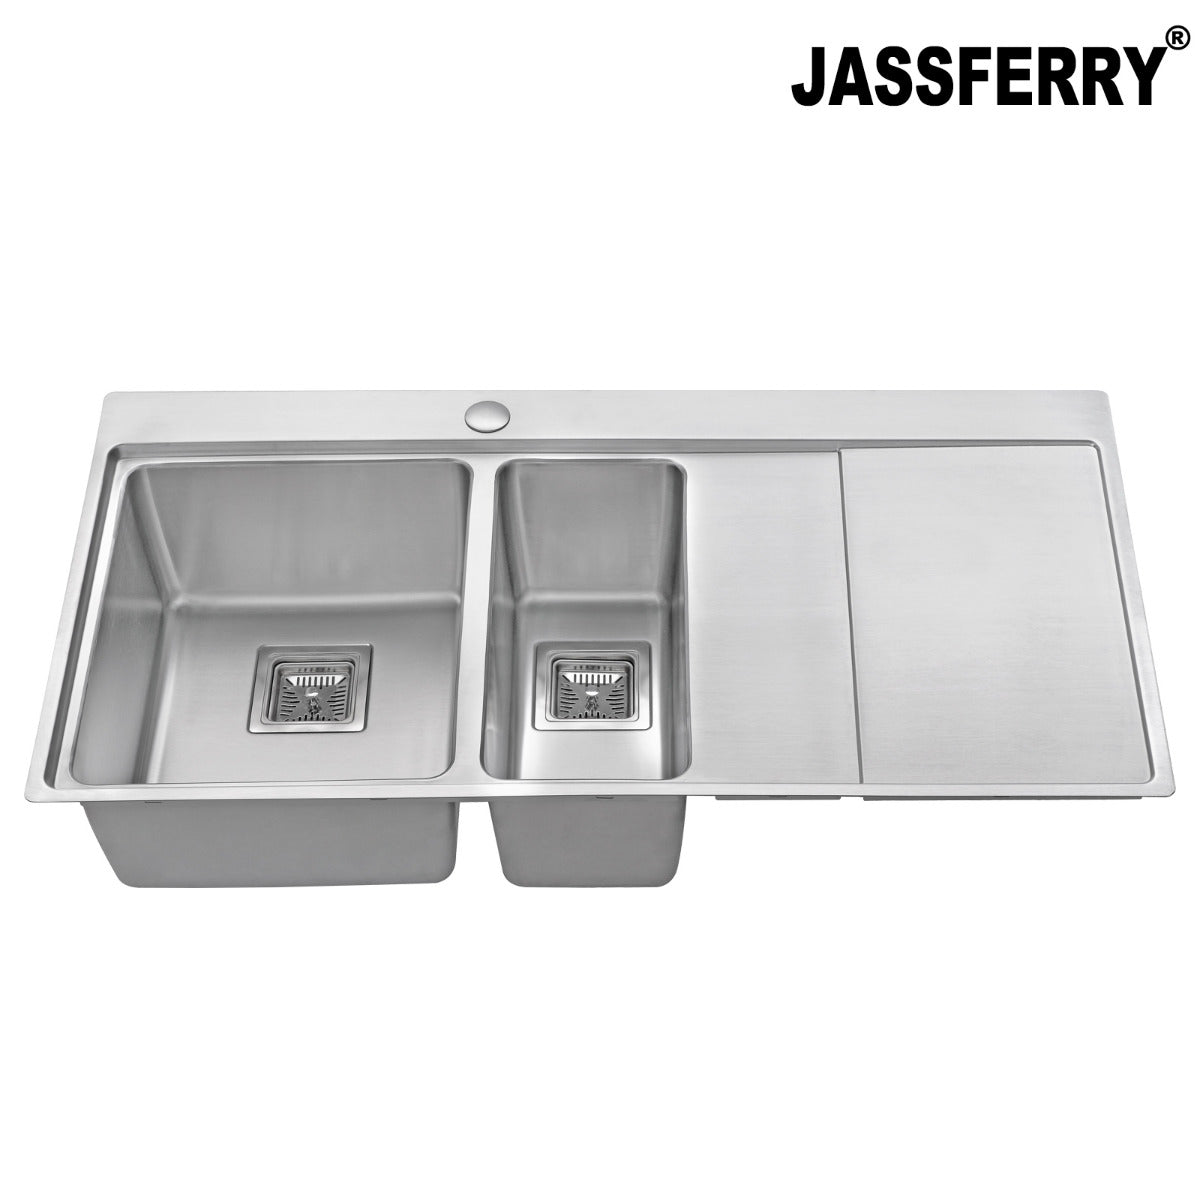 JassferryJASSFERRY Brilliant Stainless Steel Kitchen Sink One&Half Bowl Right hand DrainerKitchen Sinks